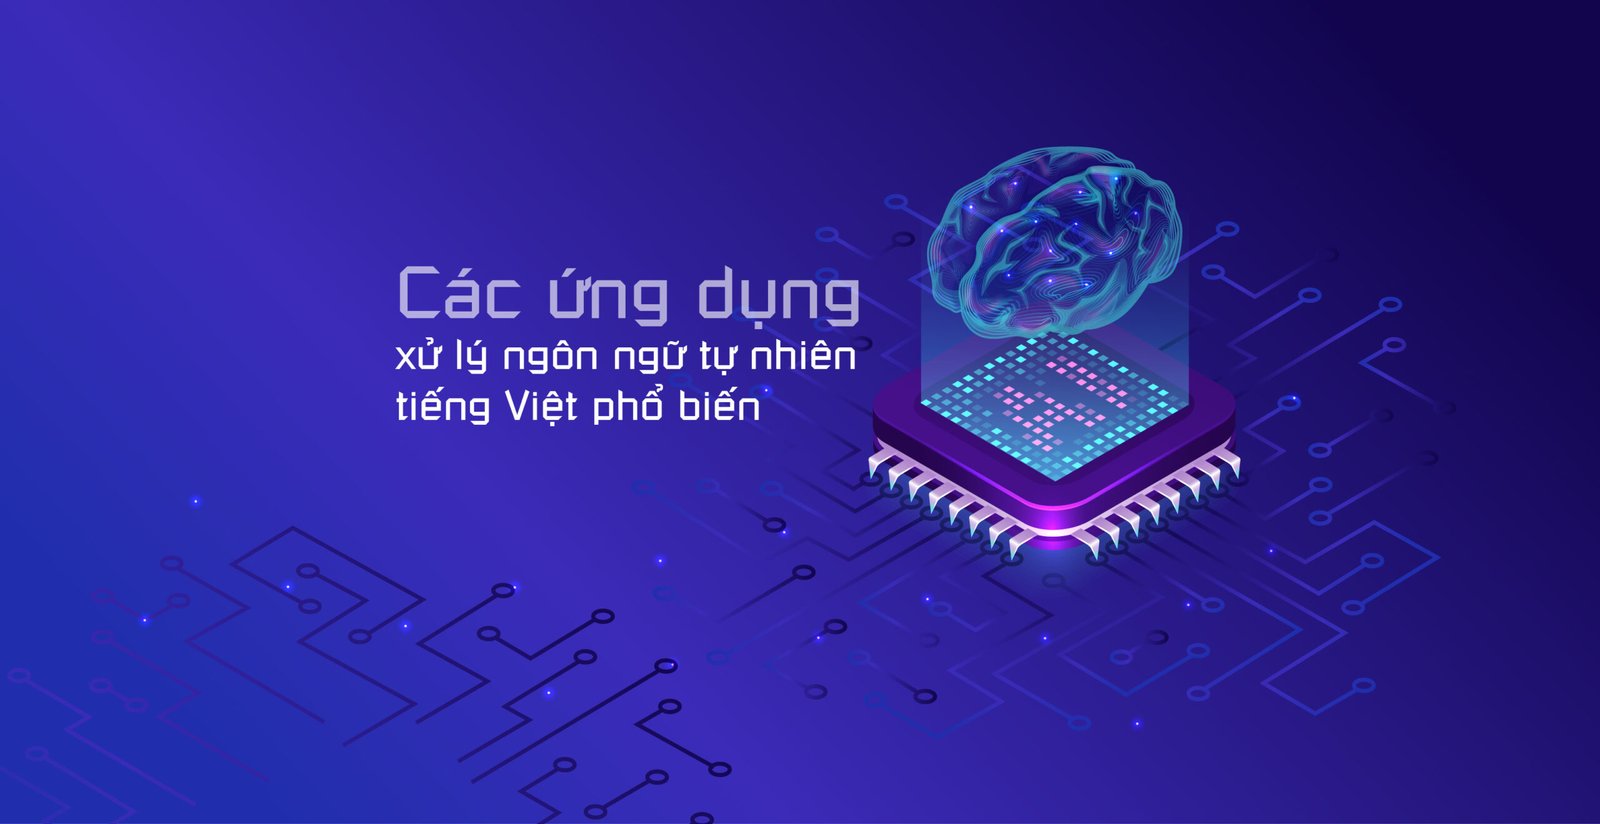 Ứng dụng xử lý ngôn ngữ tự nhiên tiếng Việt phổ biến